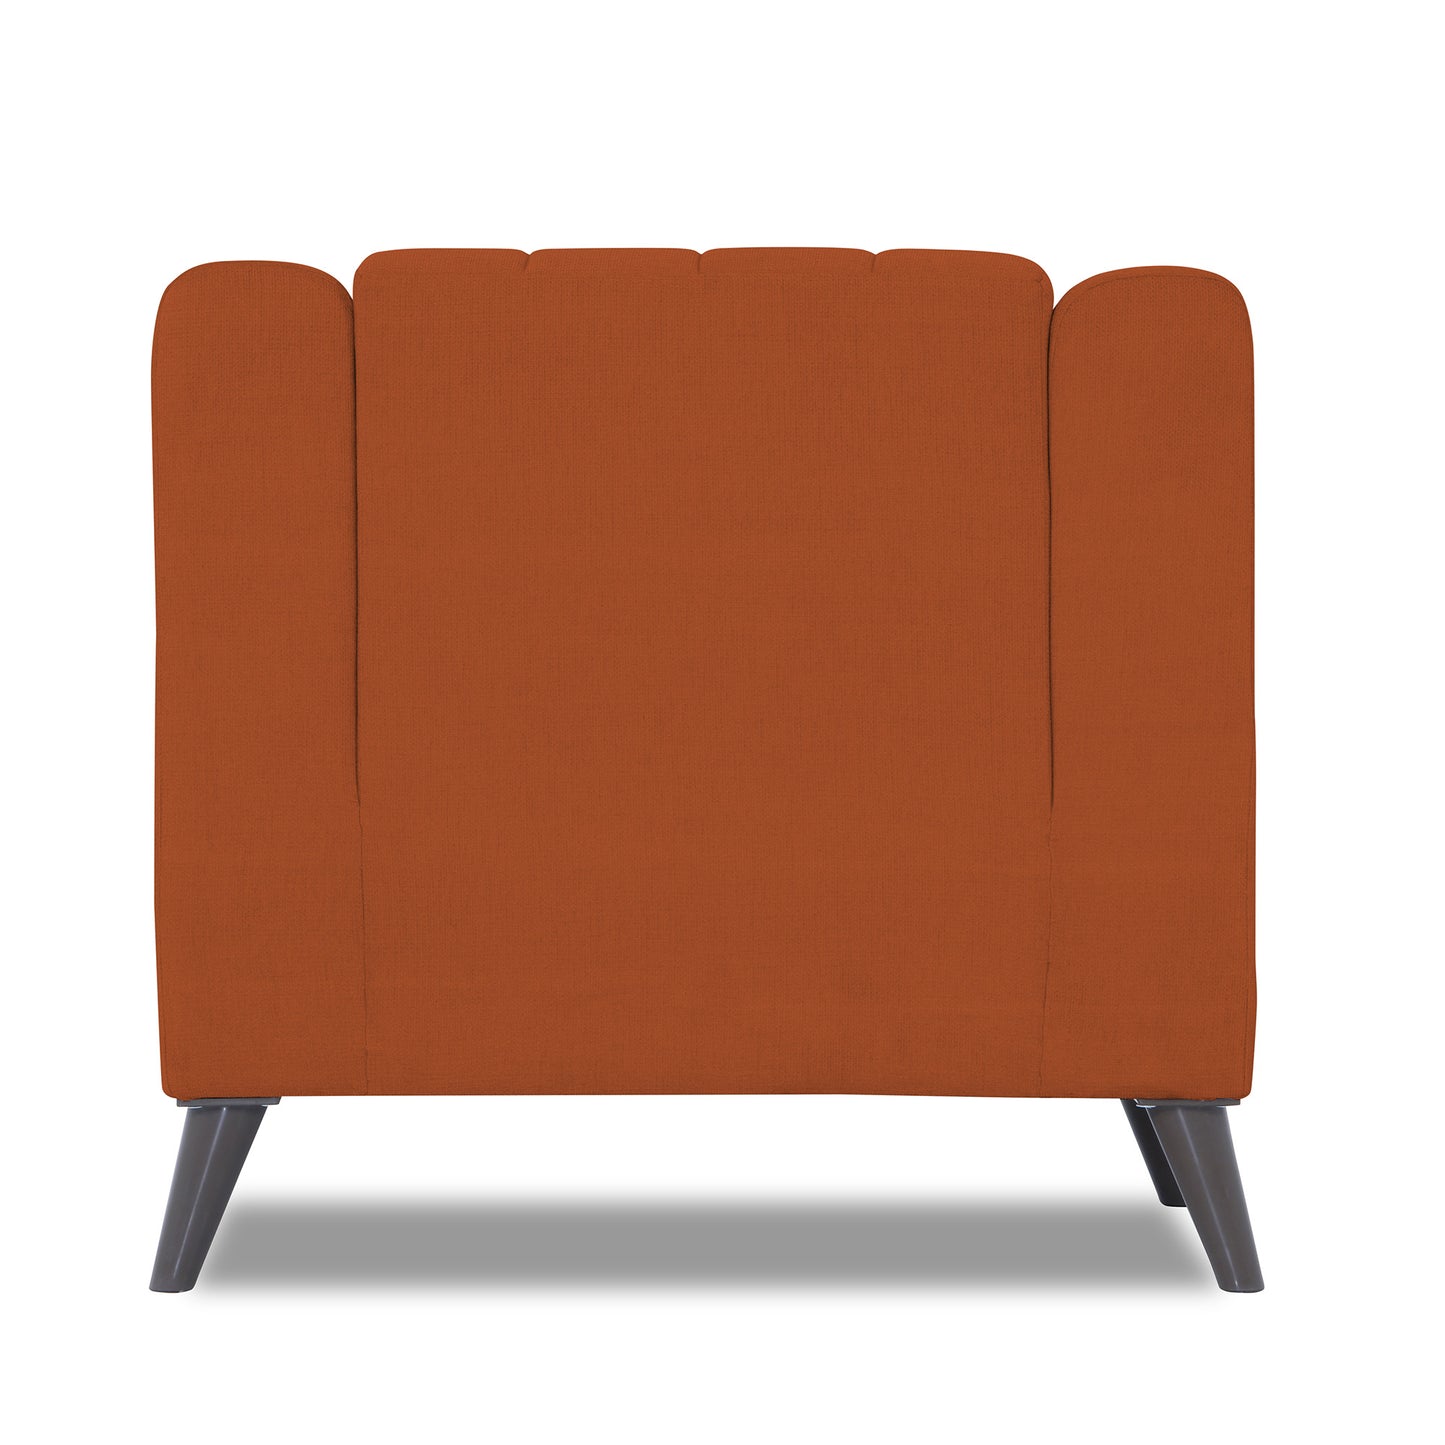 Adorn India Premium Laurel 1 Seater Sofa (Rust)